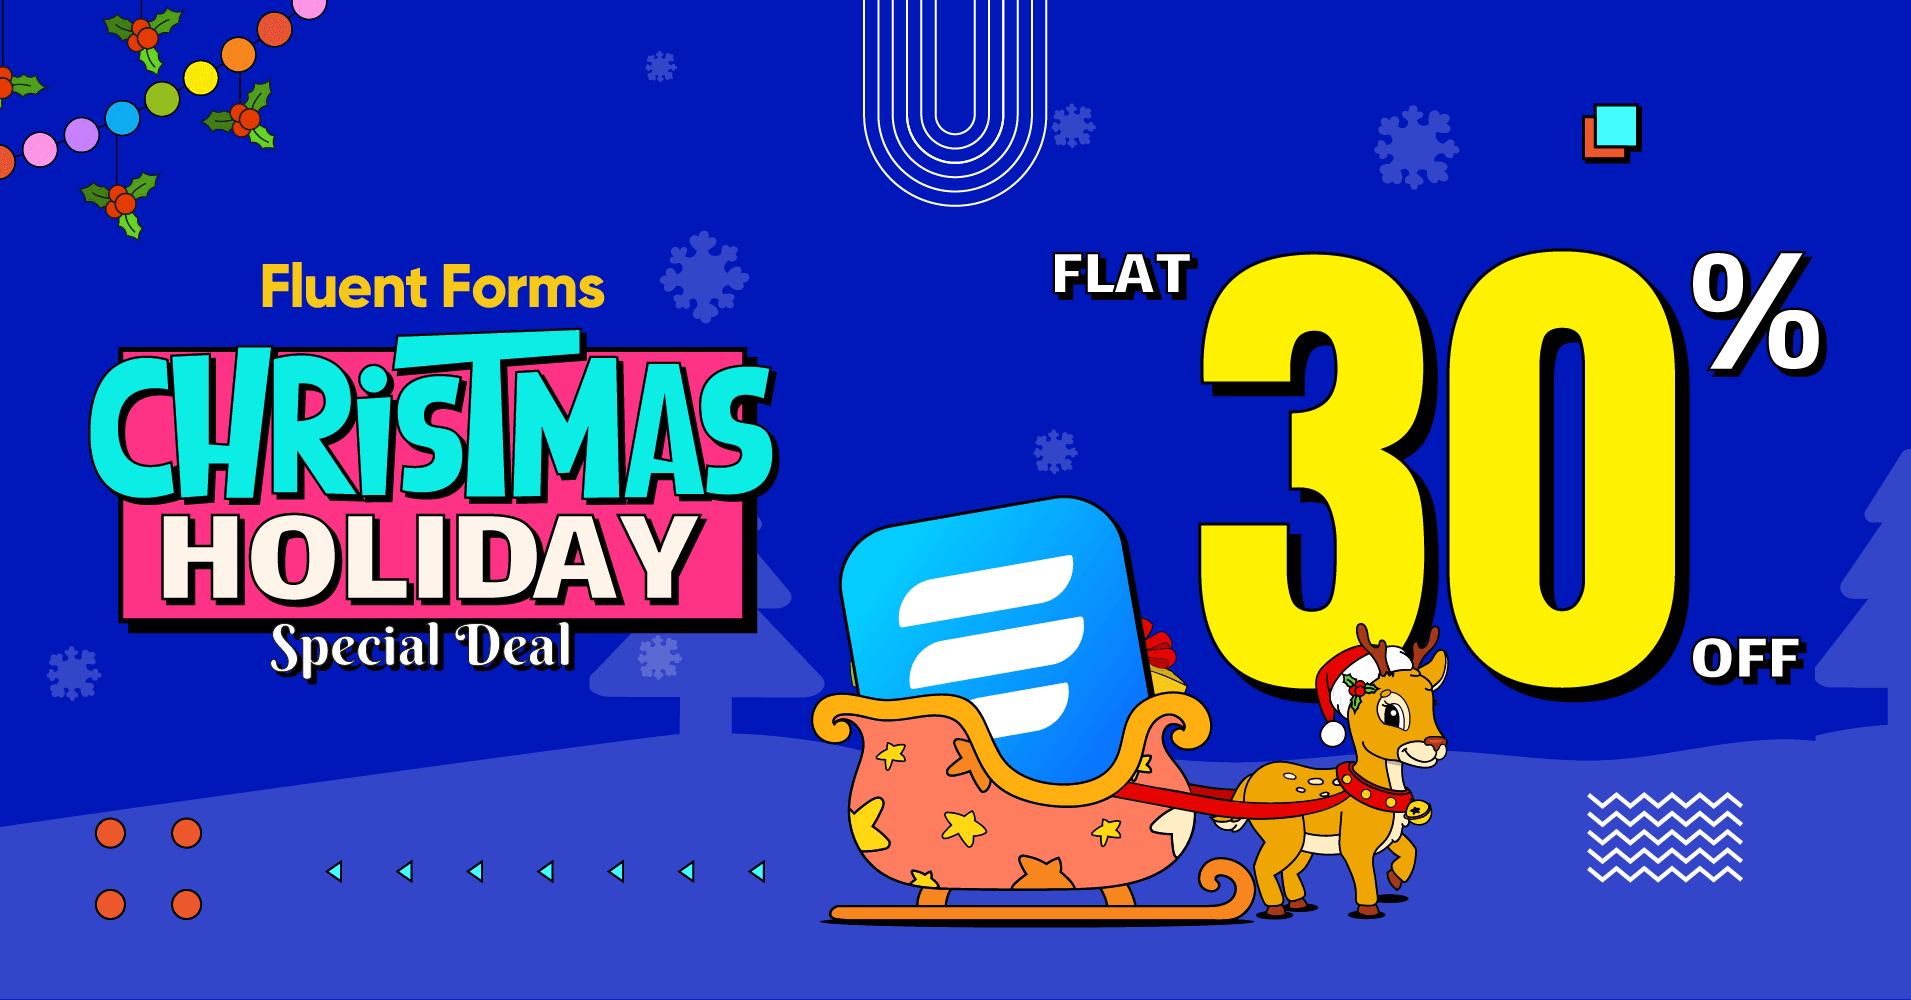 FluentForms Christmas Holiday Special Deal